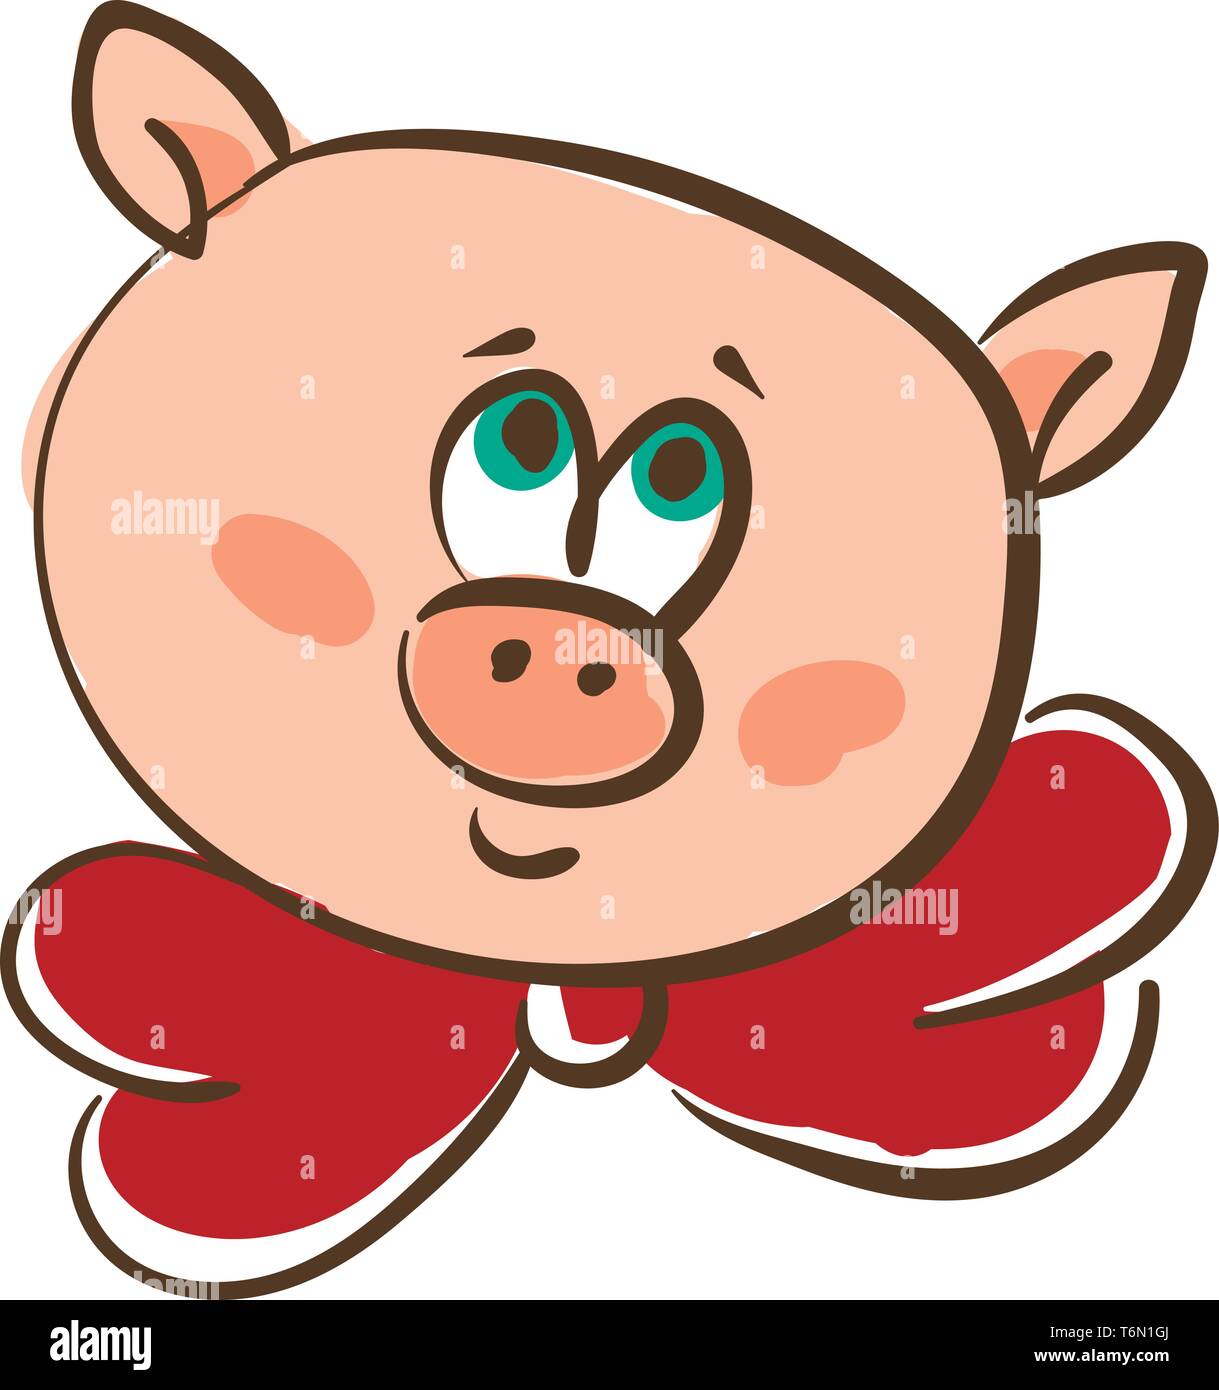 Zeichnung des Gesichts einer rosa Schwein in einem rot gefärbten Hals bowtie mit grünen Augen gerollt lächelt vector Farbe, Zeichnung oder Abbildung Stock Vektor